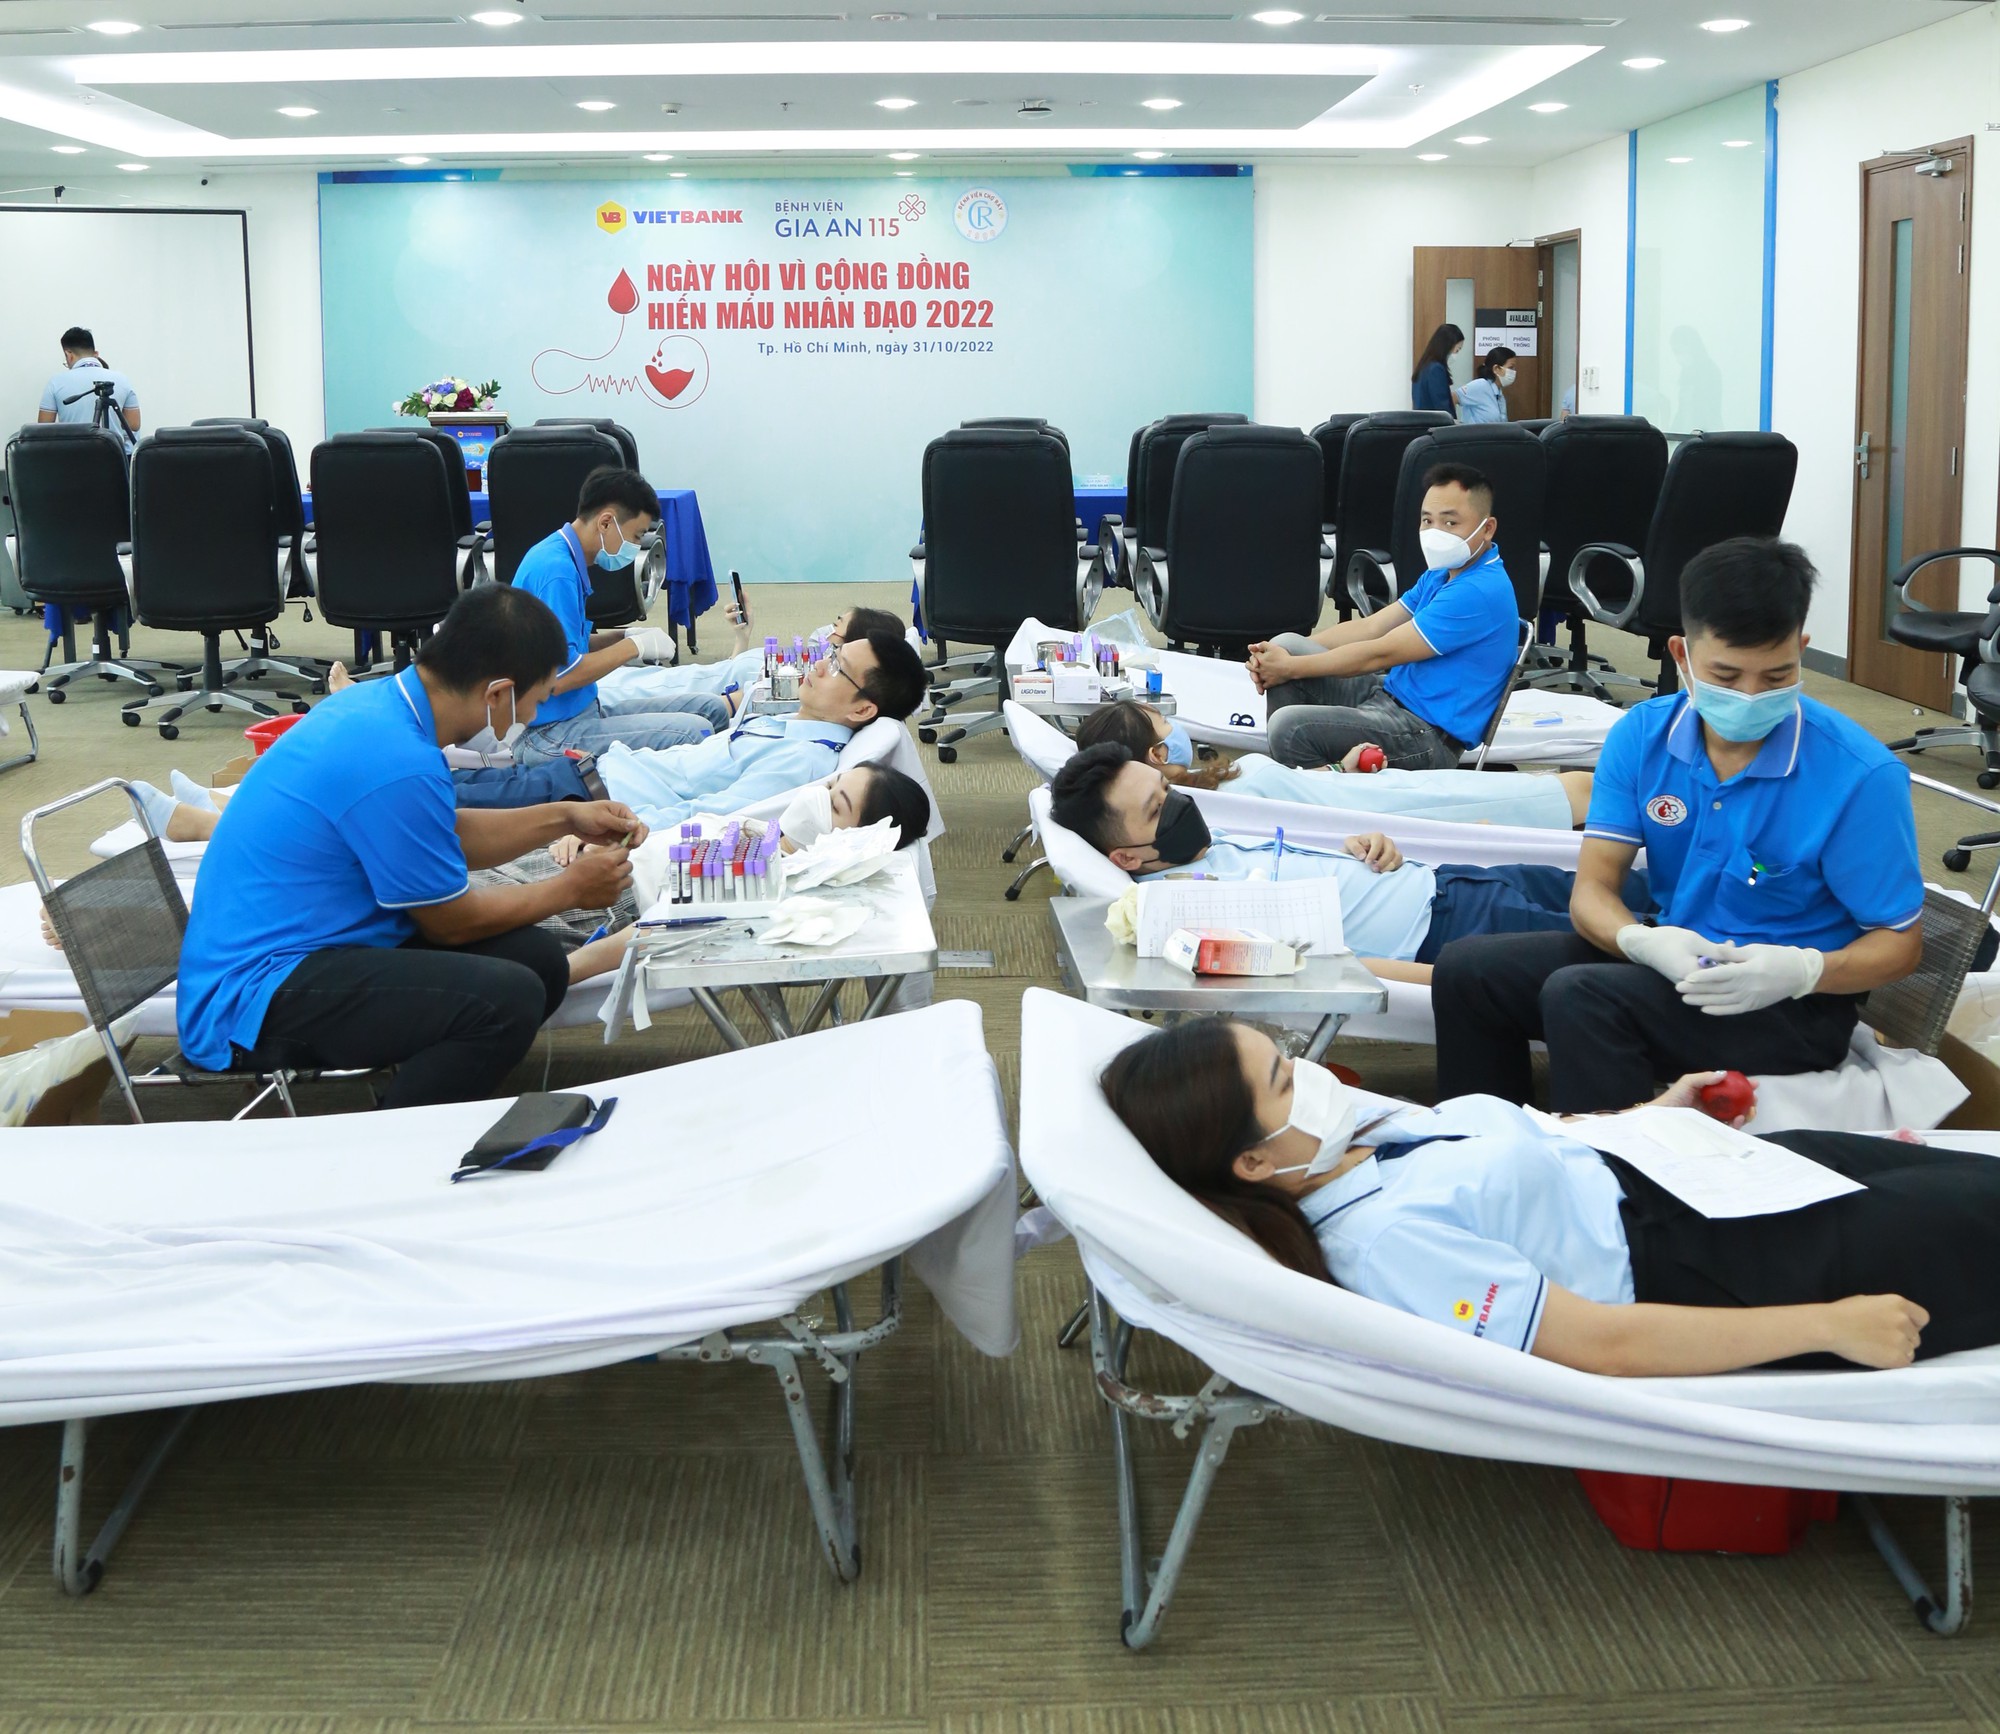 Vietbank tổ chức ngày hội hiến máu nhân đạo 2022